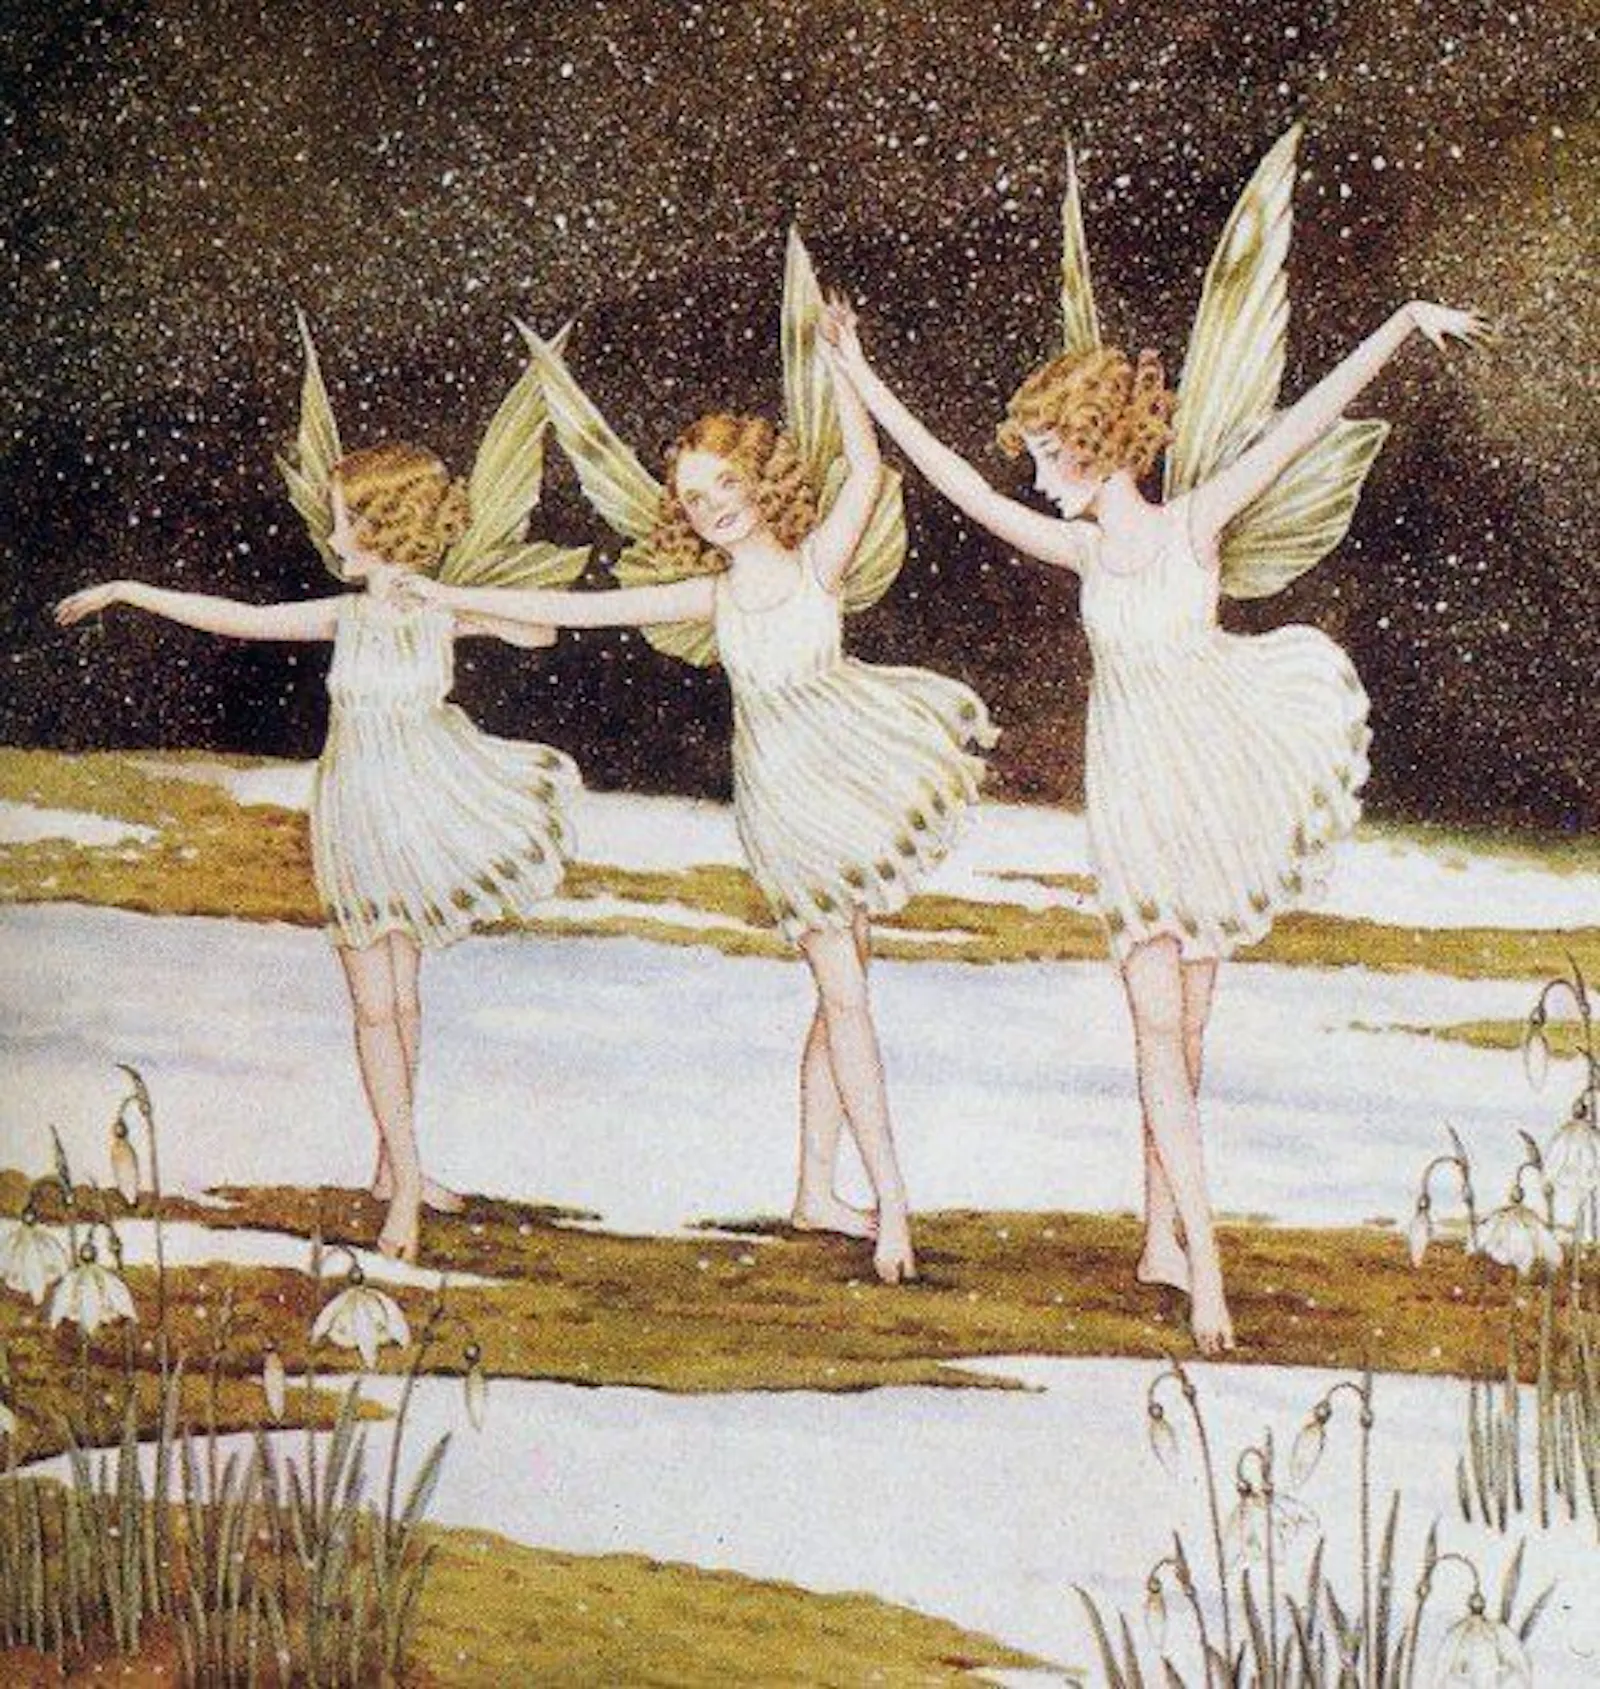 Tre fatine in un paesaggio nevoso, si tengono per mano e sembrano stare facendo dei passi di danza. Indossano dei vestitini svasati bianchi, hanno i capelli riccioluti rossi e un paio di ali verde chiaro a testa. L'illustrazione è di Ida Rentoul Outhwaite.